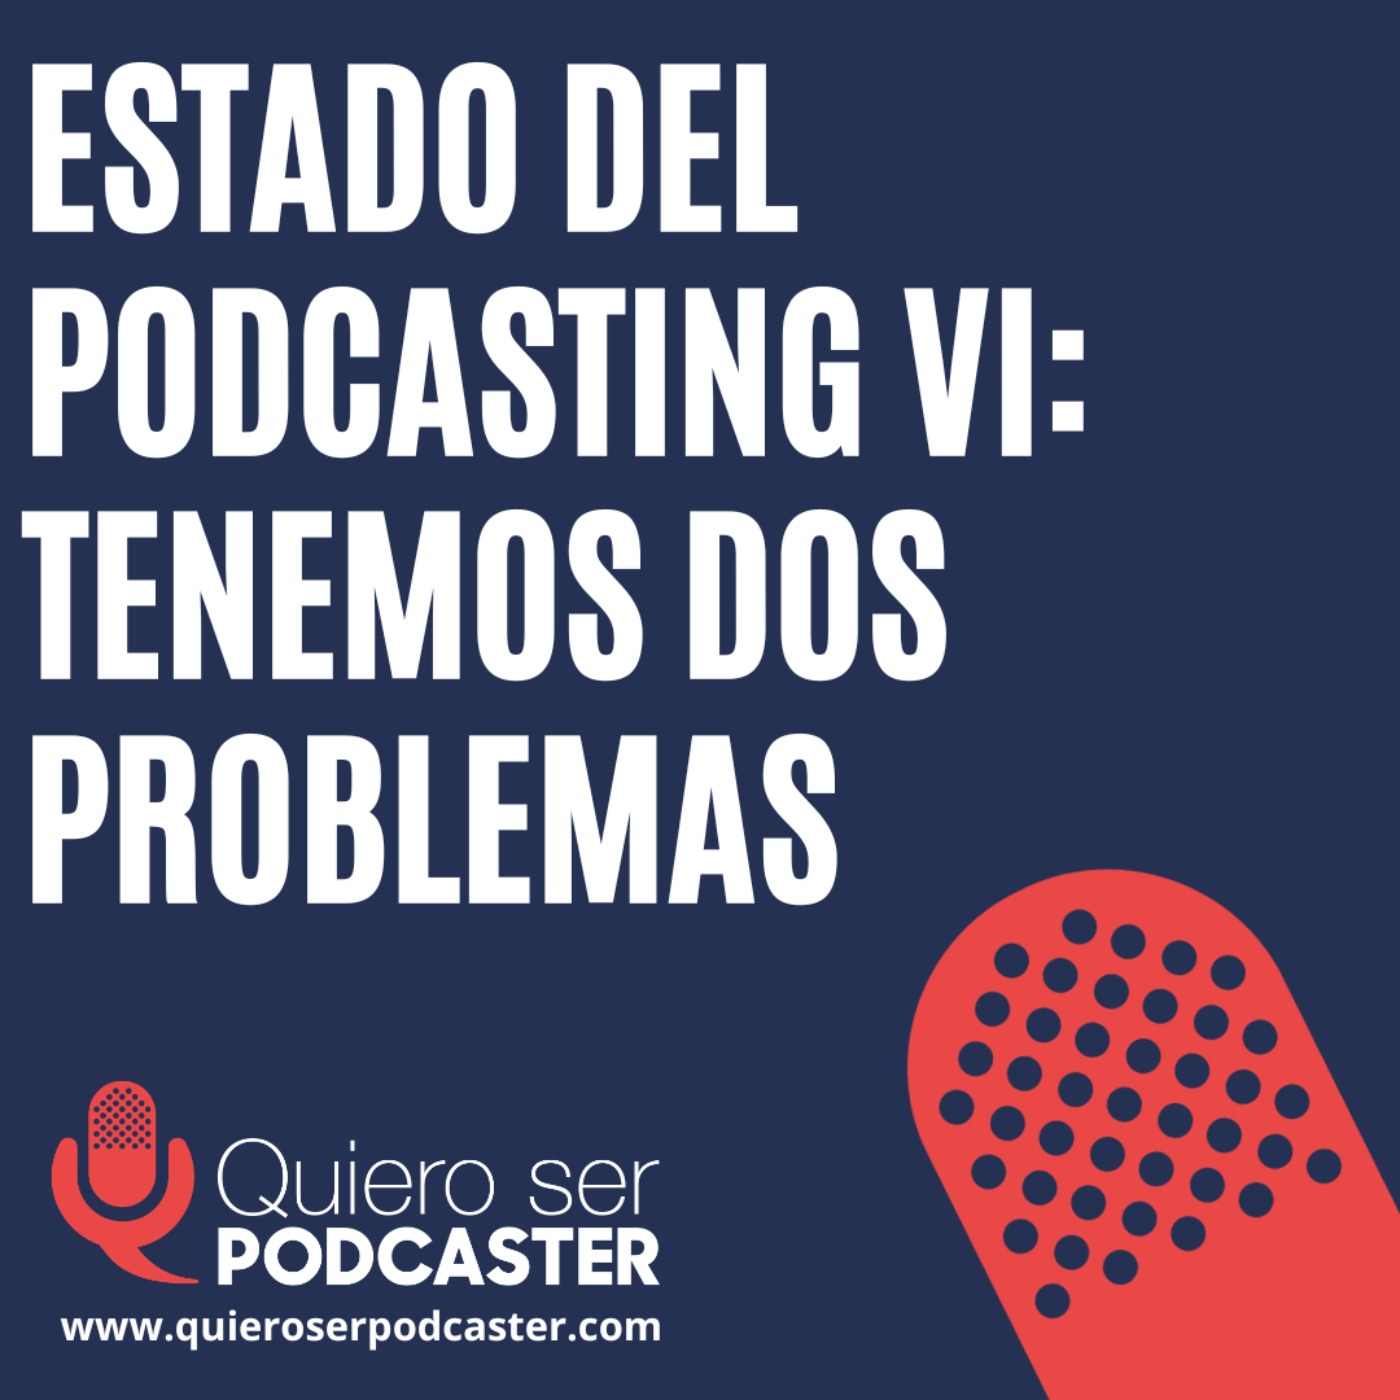 Estado del podcasting VI: Tenemos dos problemas